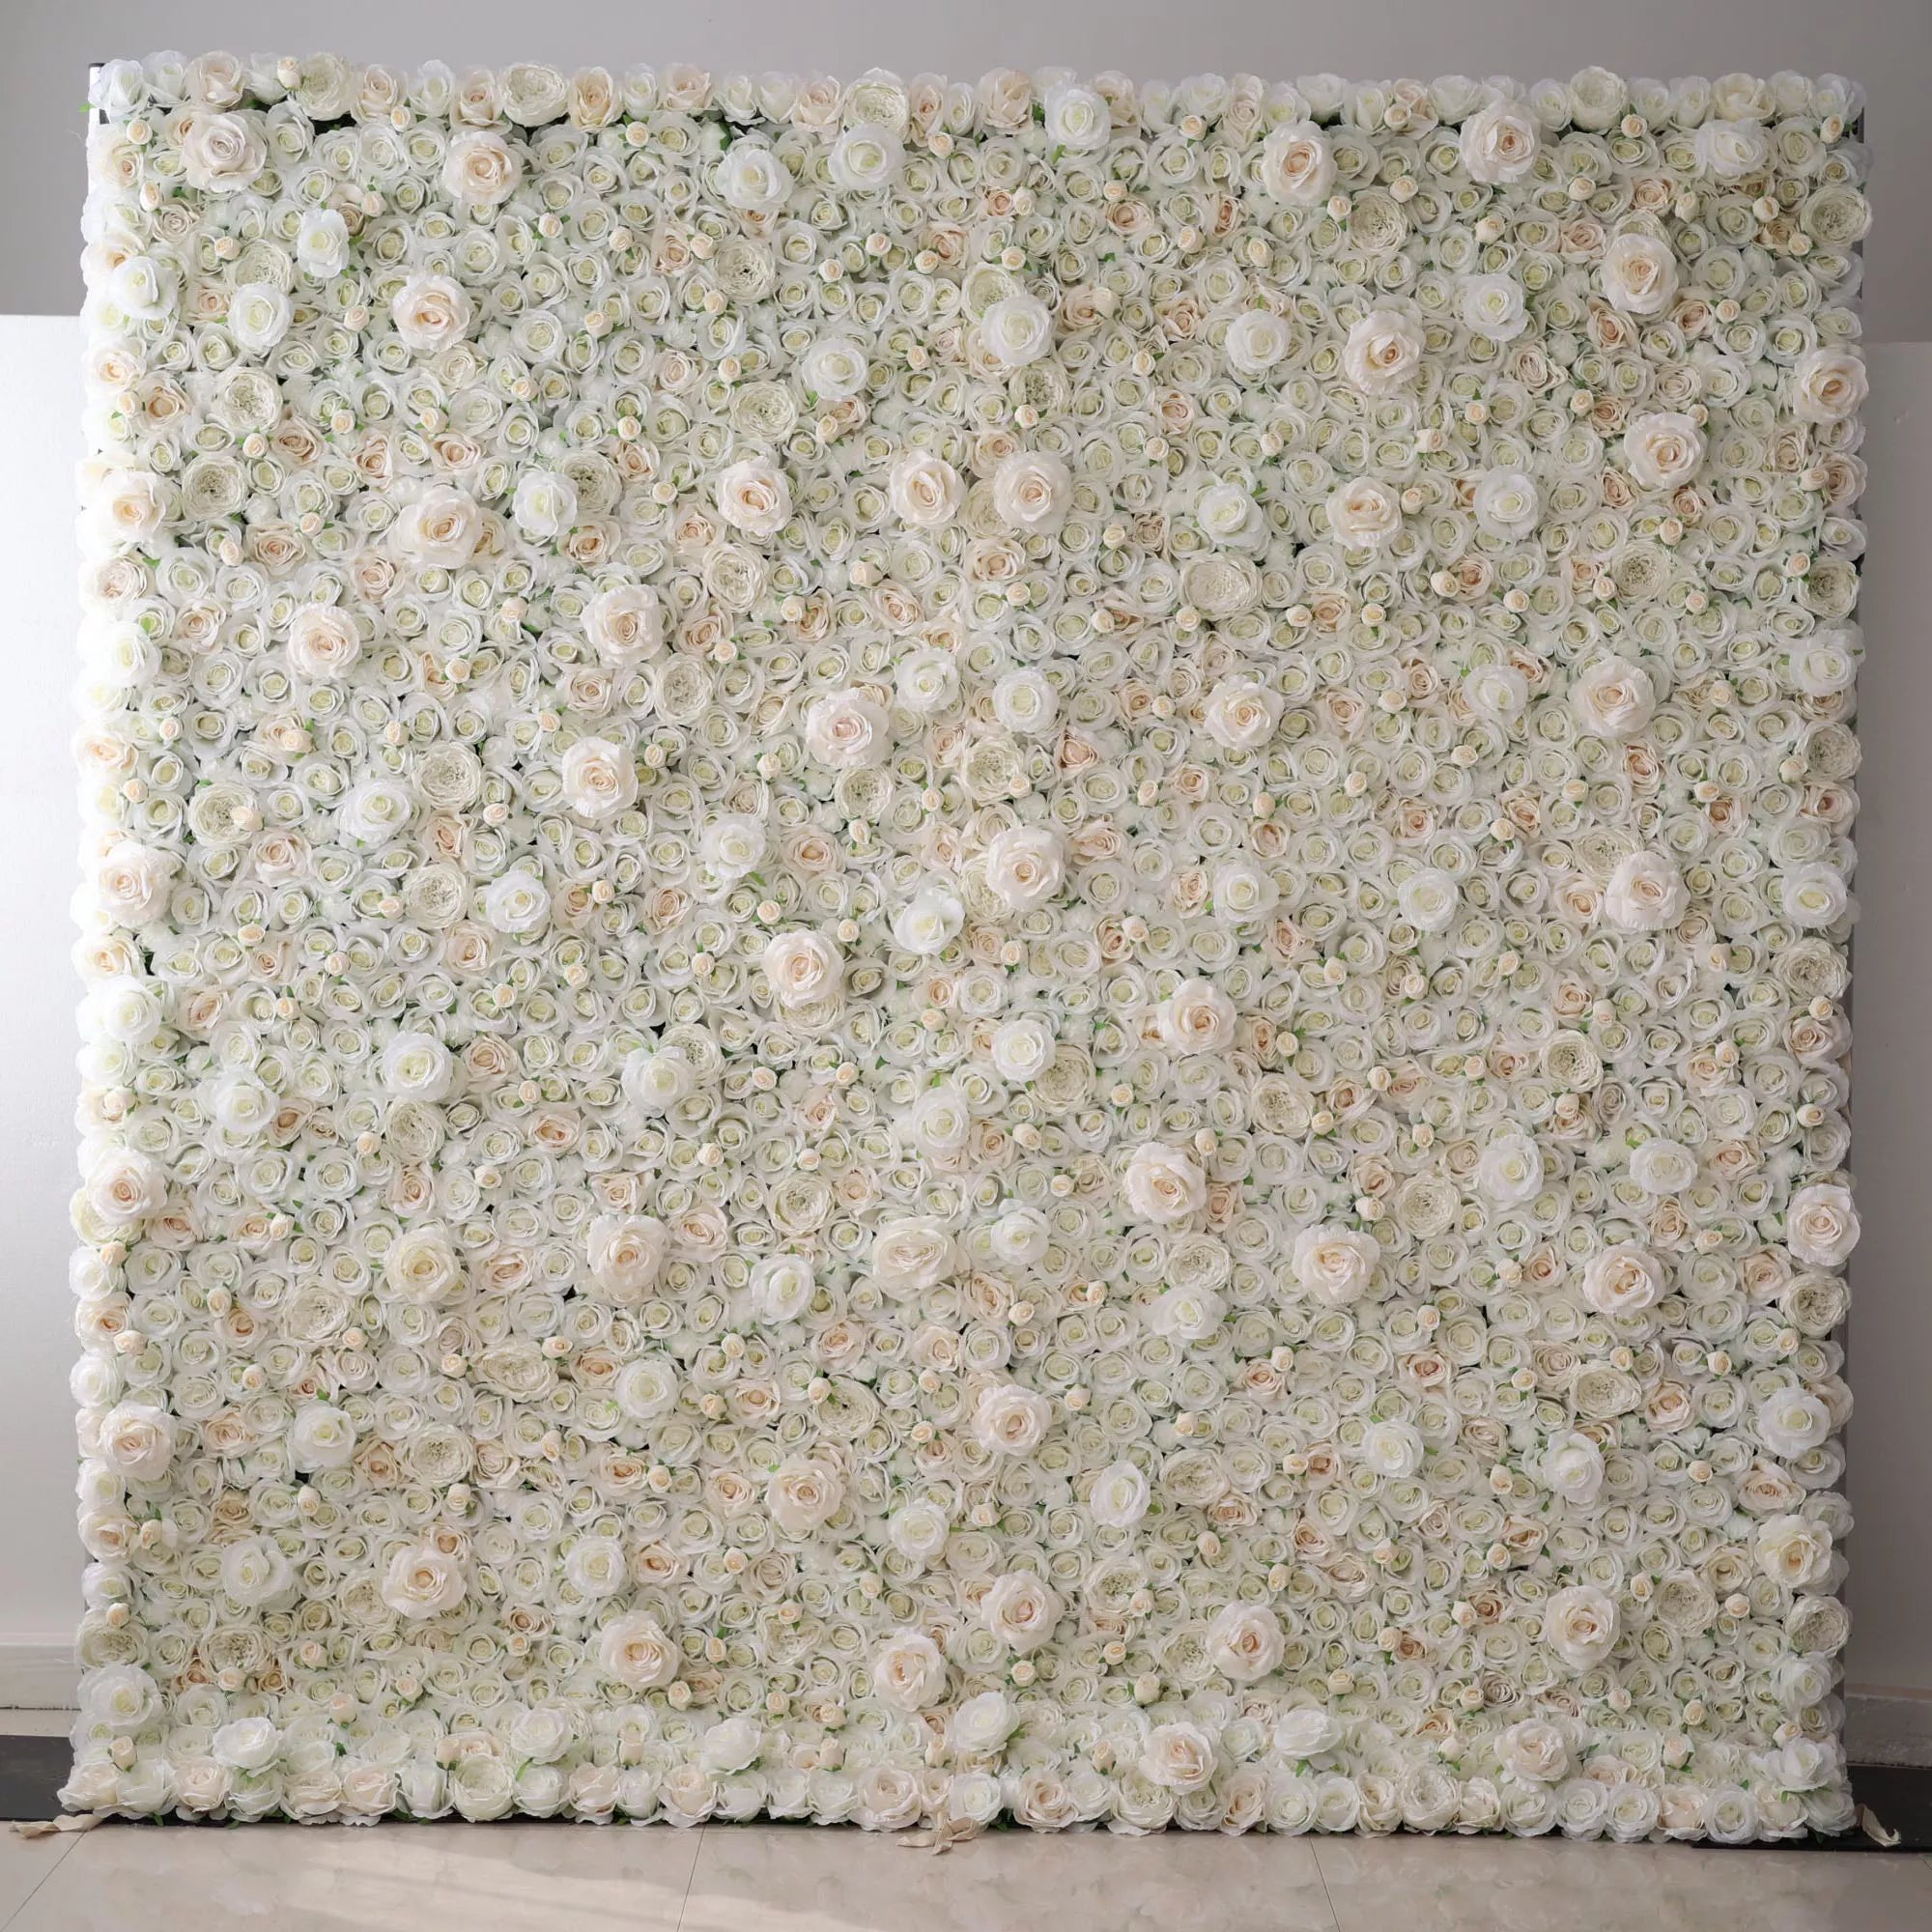 Valar Fleurs Roll Up Tissu Artificiel Citron Blanc Rose Rose Noyau Fleur Mur Toile De Fond De Mariage, Décor De Fête Florale, Photographie D'événement-VF-085-2 